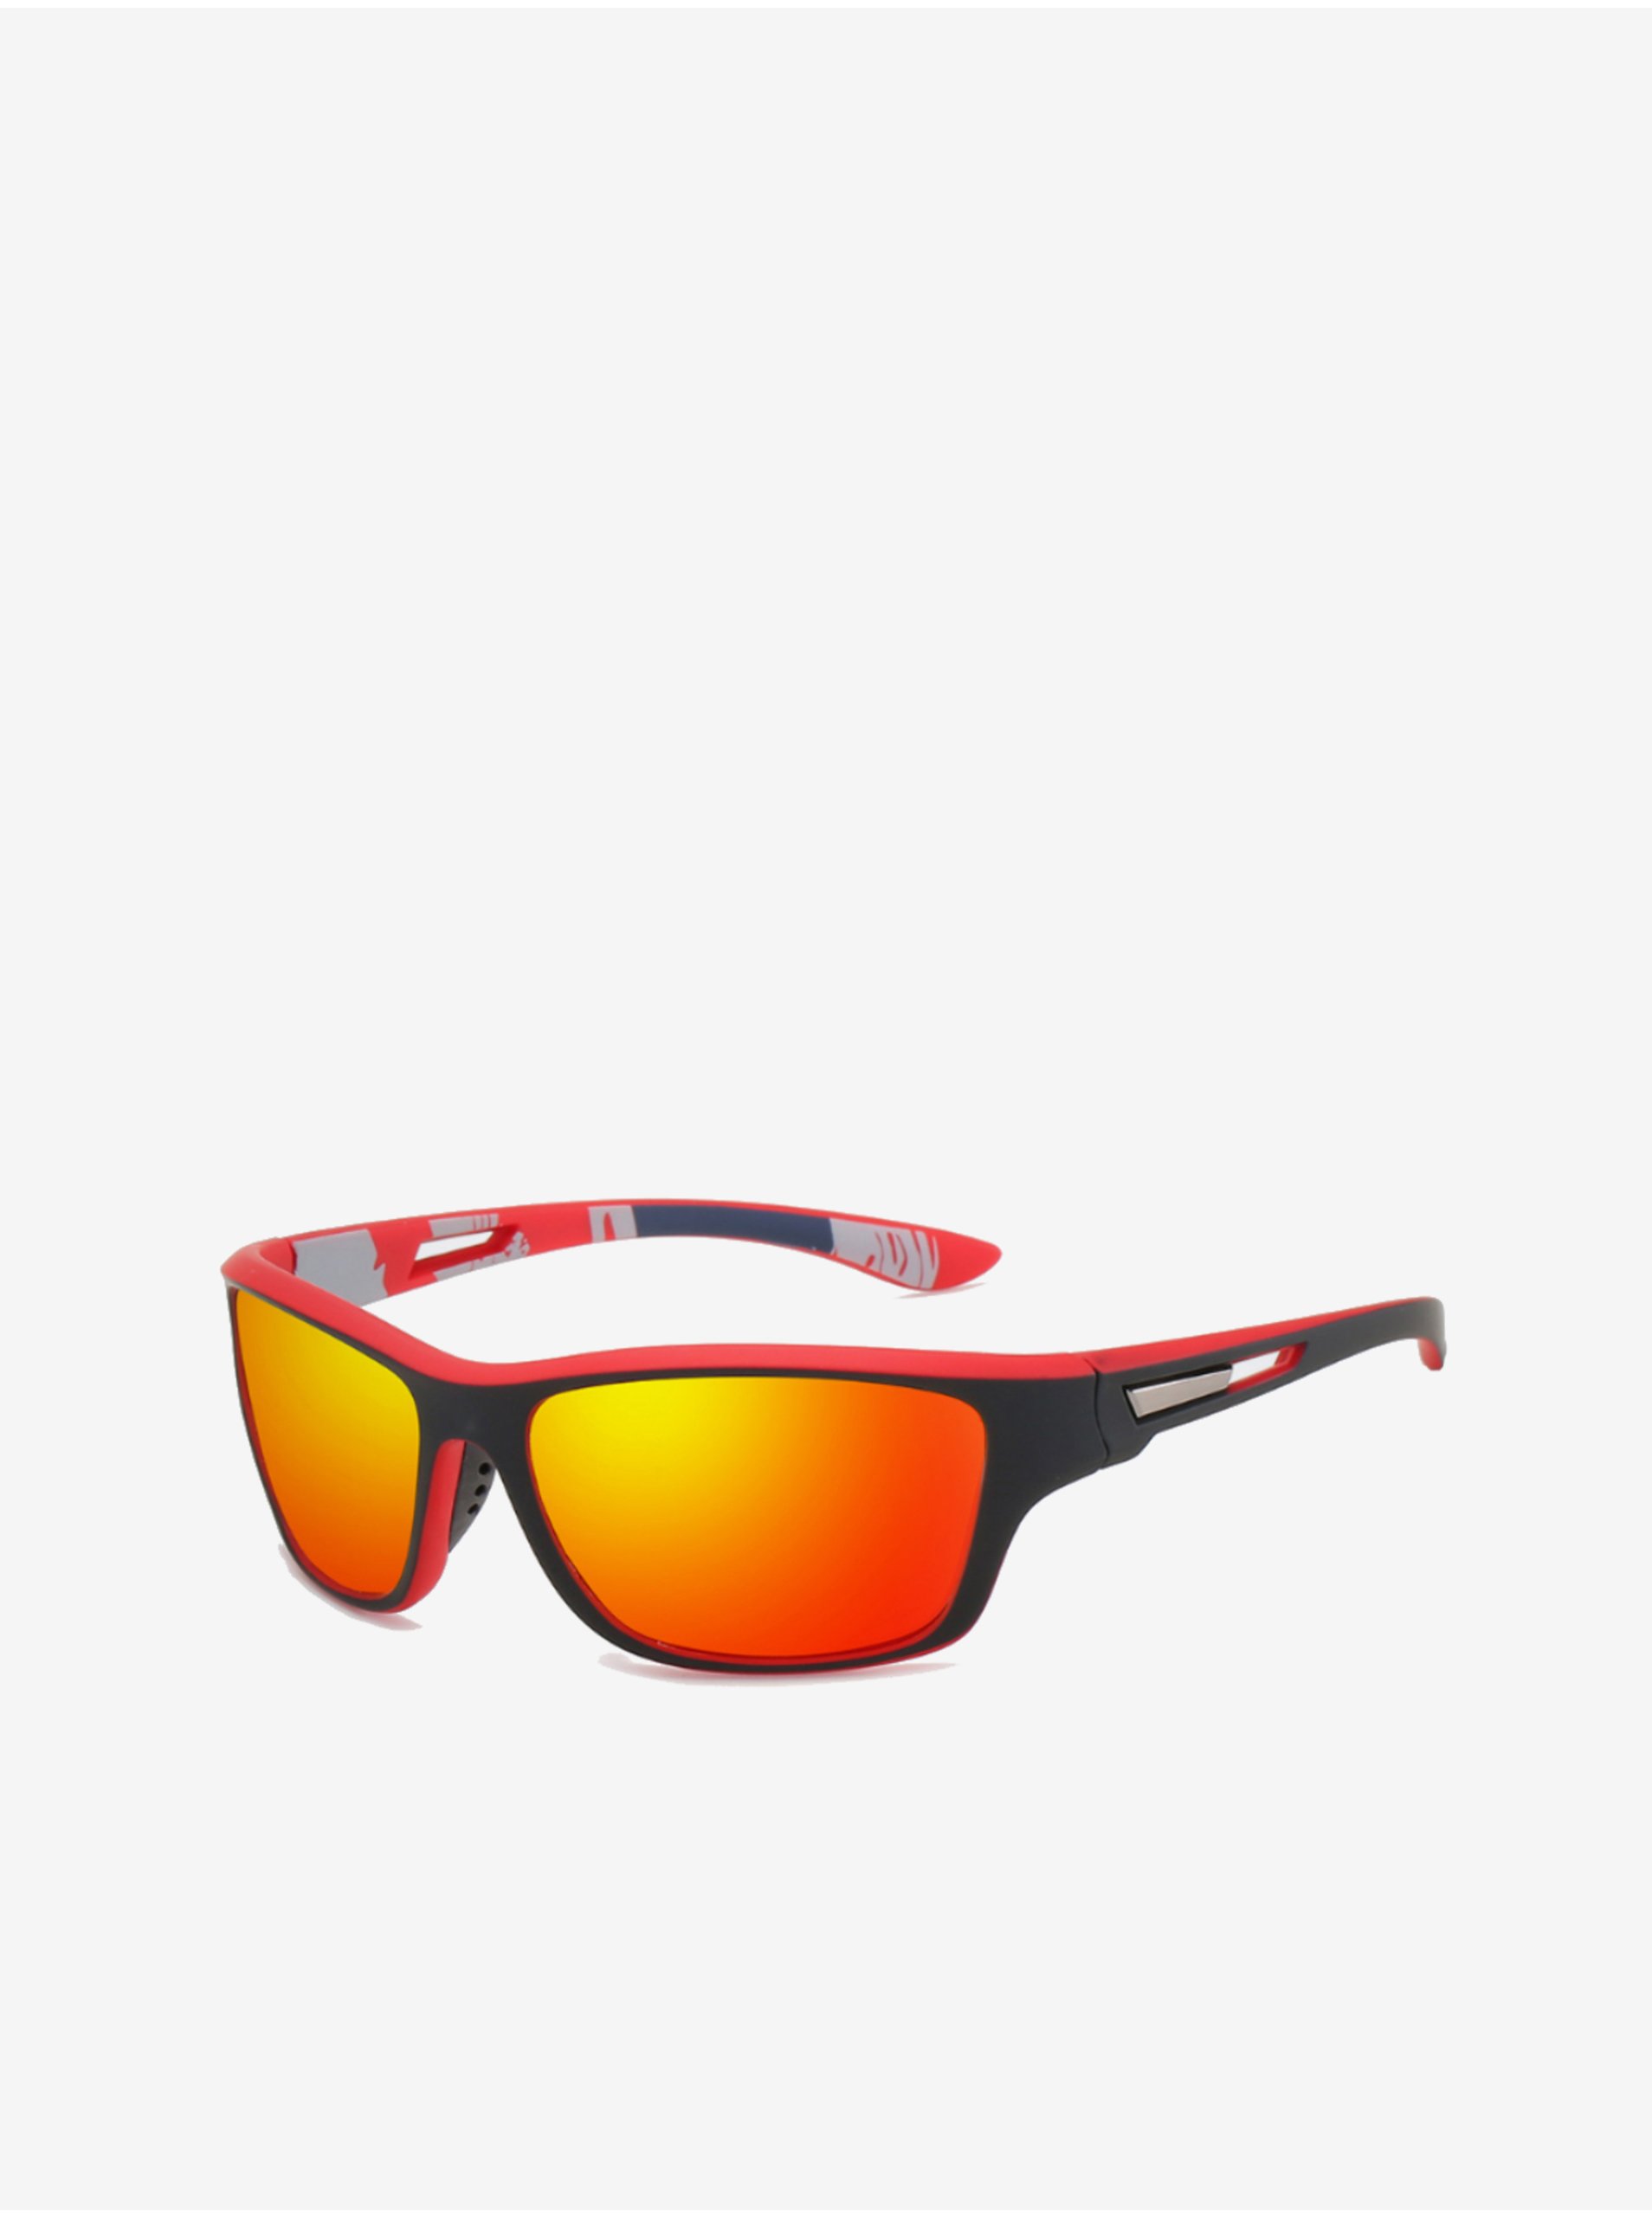 Lacno Červeno-čierne športové polarizačné slnečné okuliare VeyRey Gustav